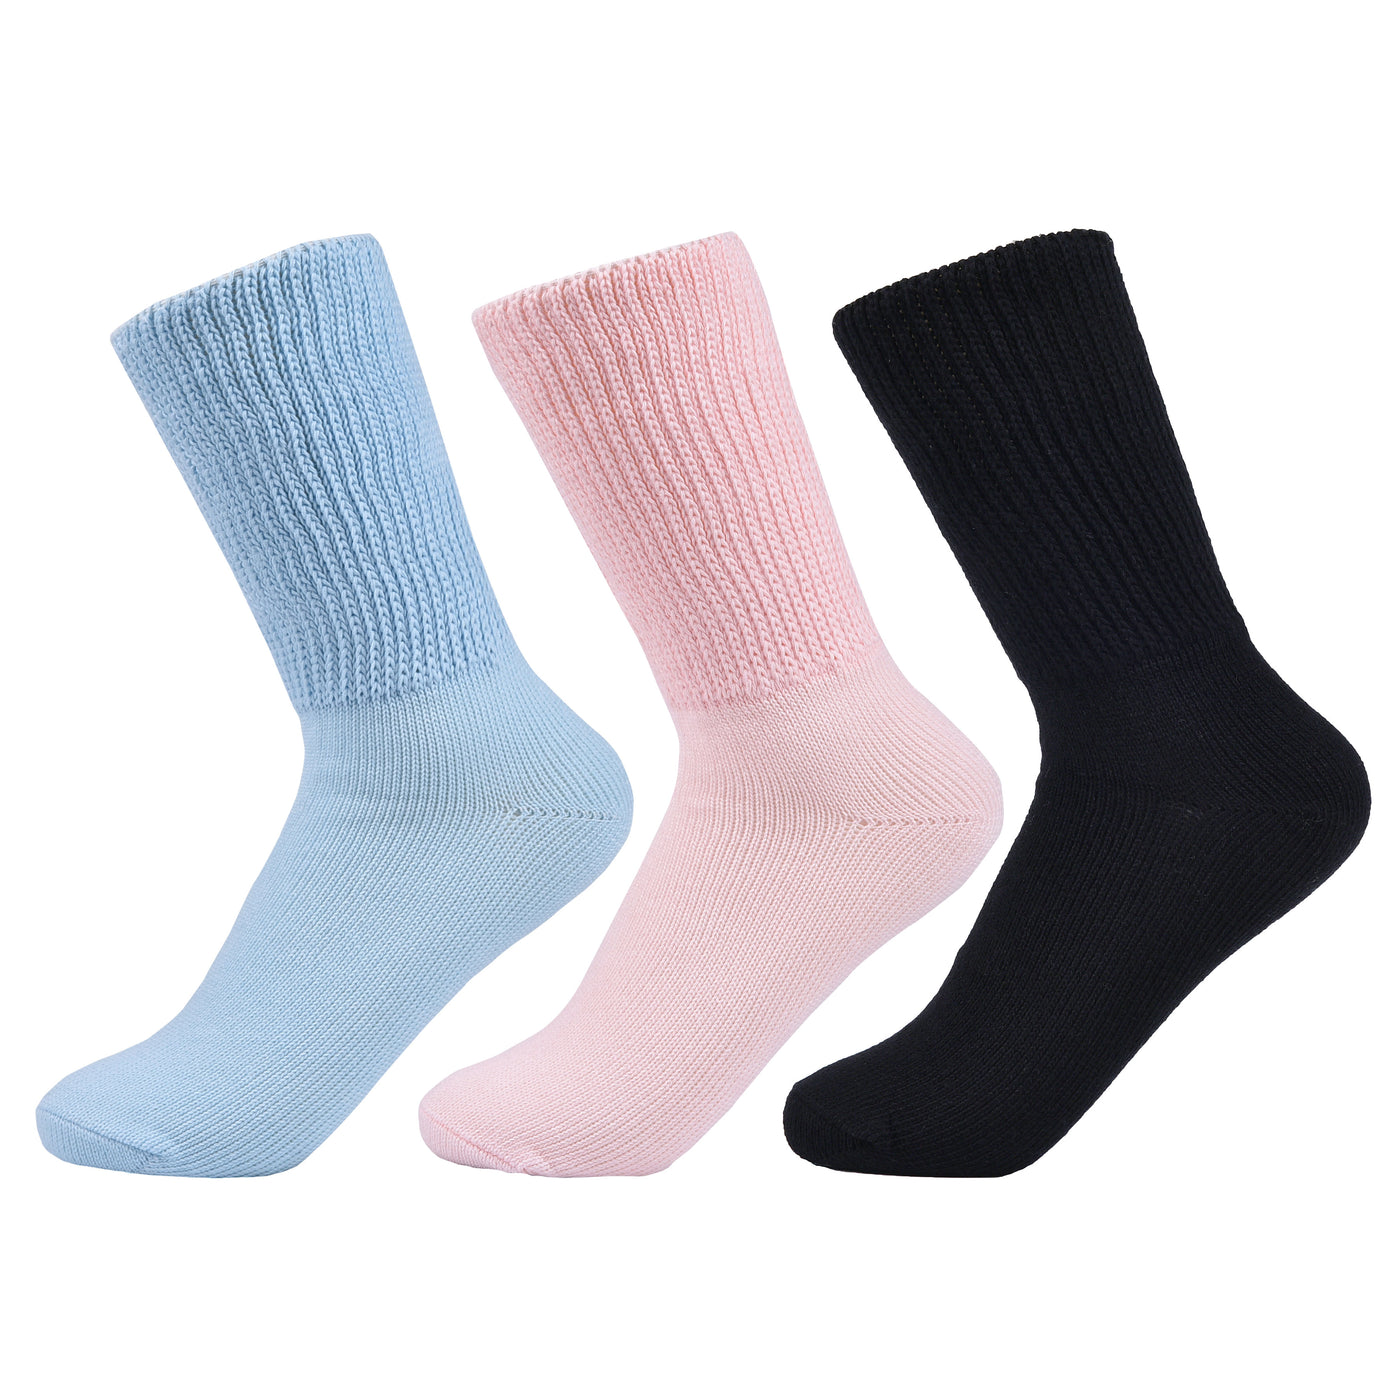 Laulax 3 pares de calcetines de algodón para diabéticos con parte superior holgada y agarre suave, negro, rosa, azul, talla UK 4 - 7 / Europa 36 - 41